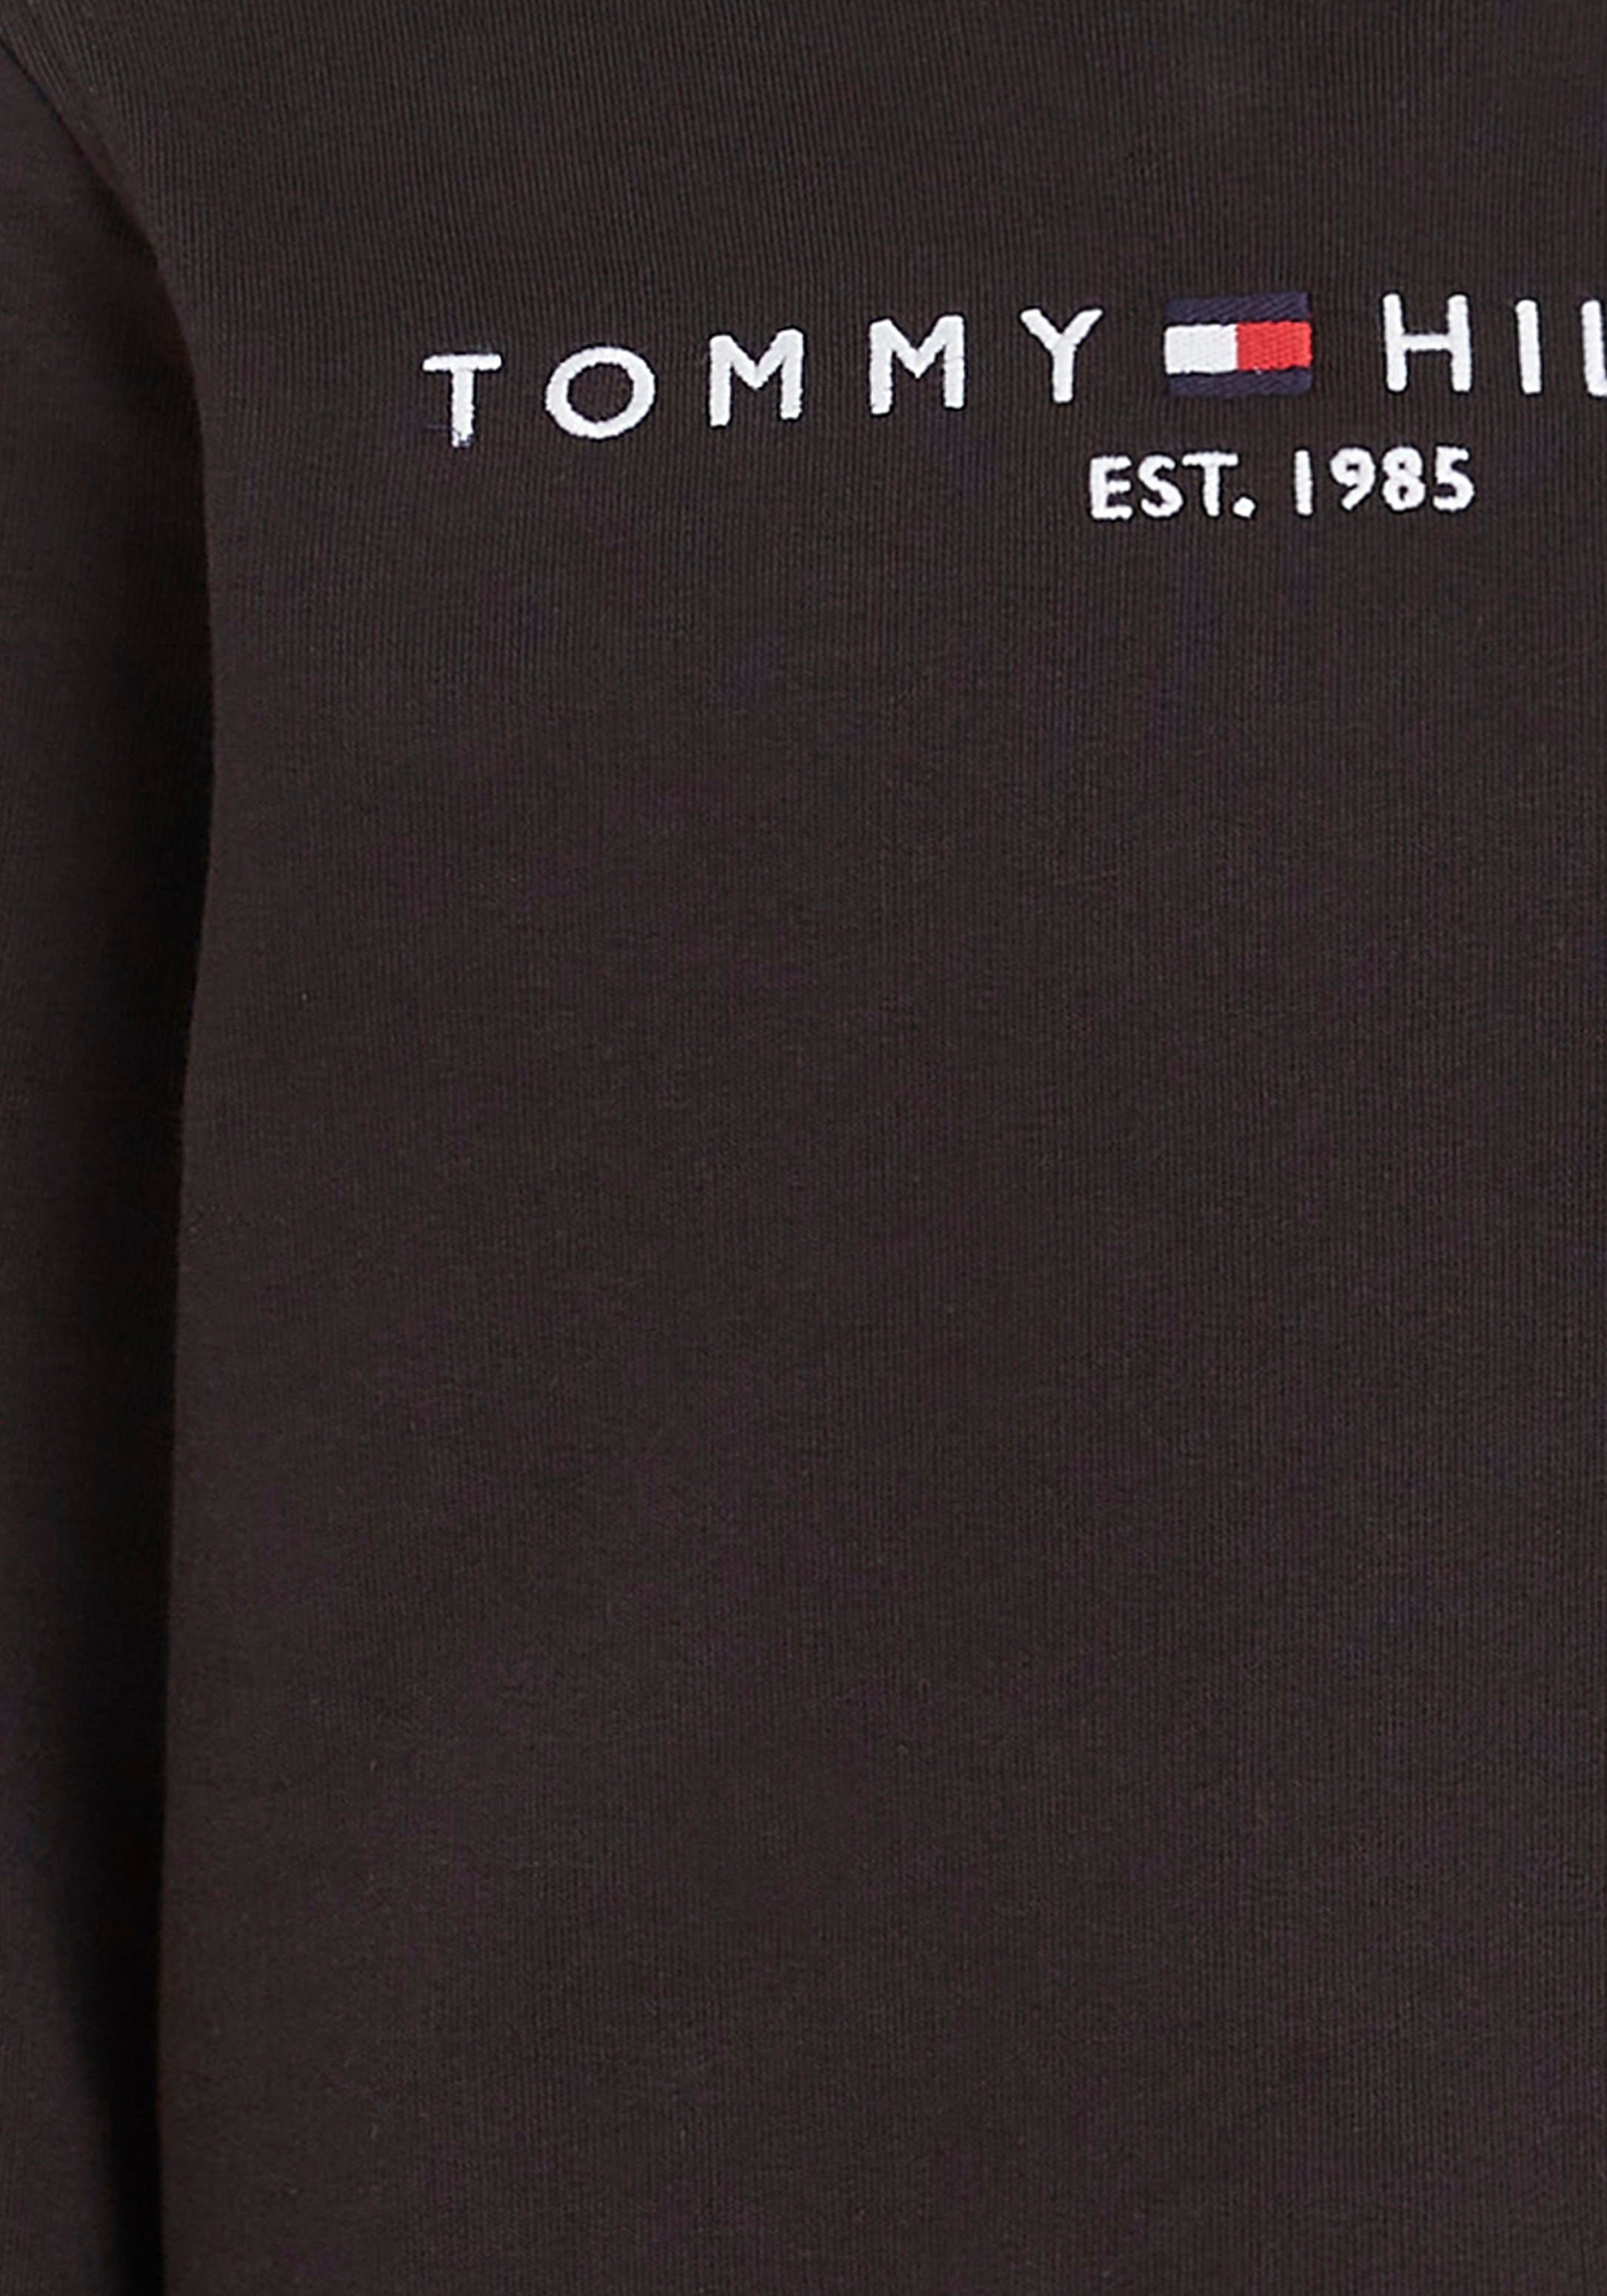 ESSENTIAL und Hilfiger Jungen für Sweatshirt Tommy Mädchen SWEATSHIRT